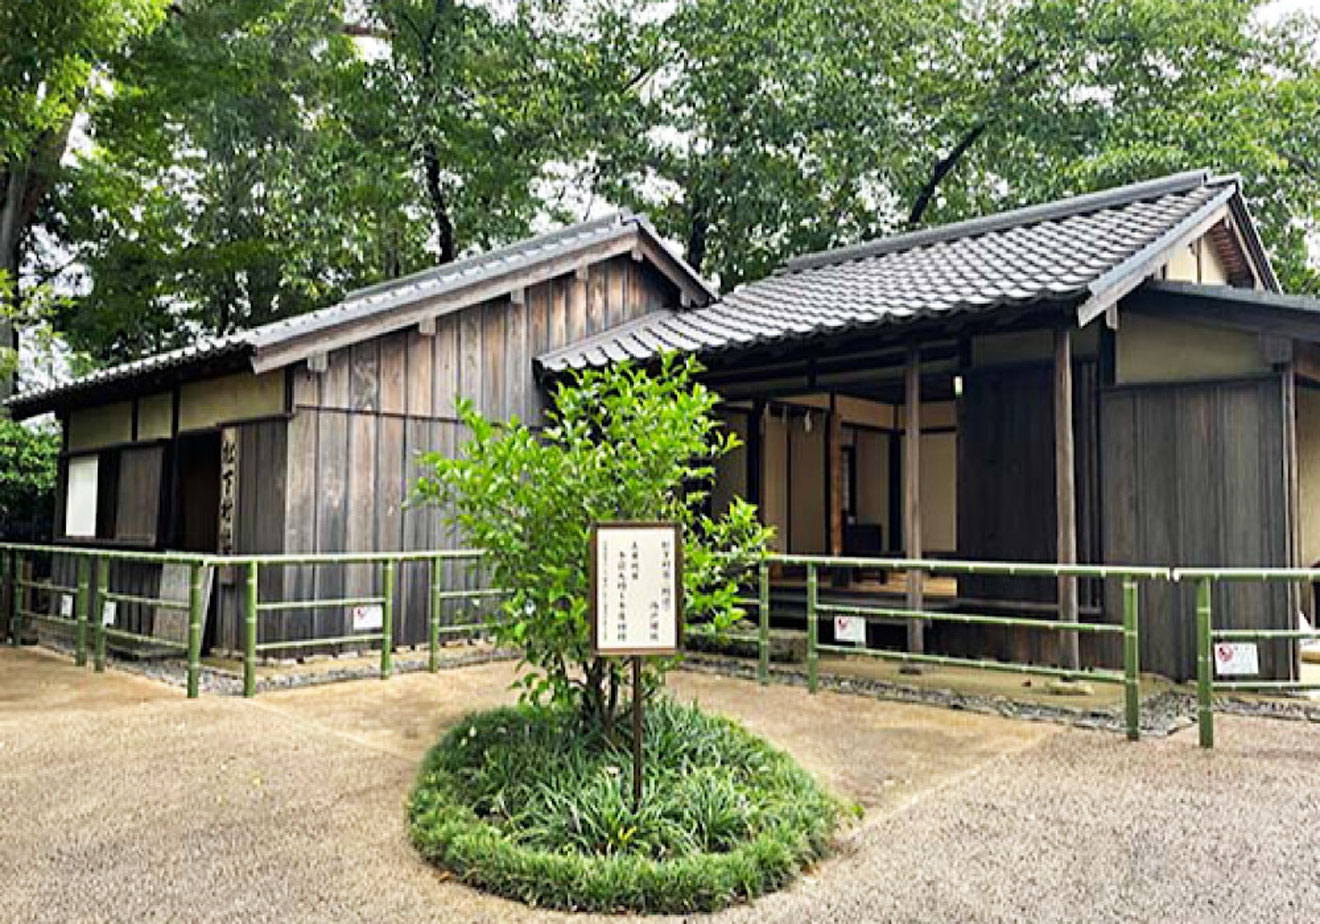 「松陰神社」の松下村塾を再現した建物